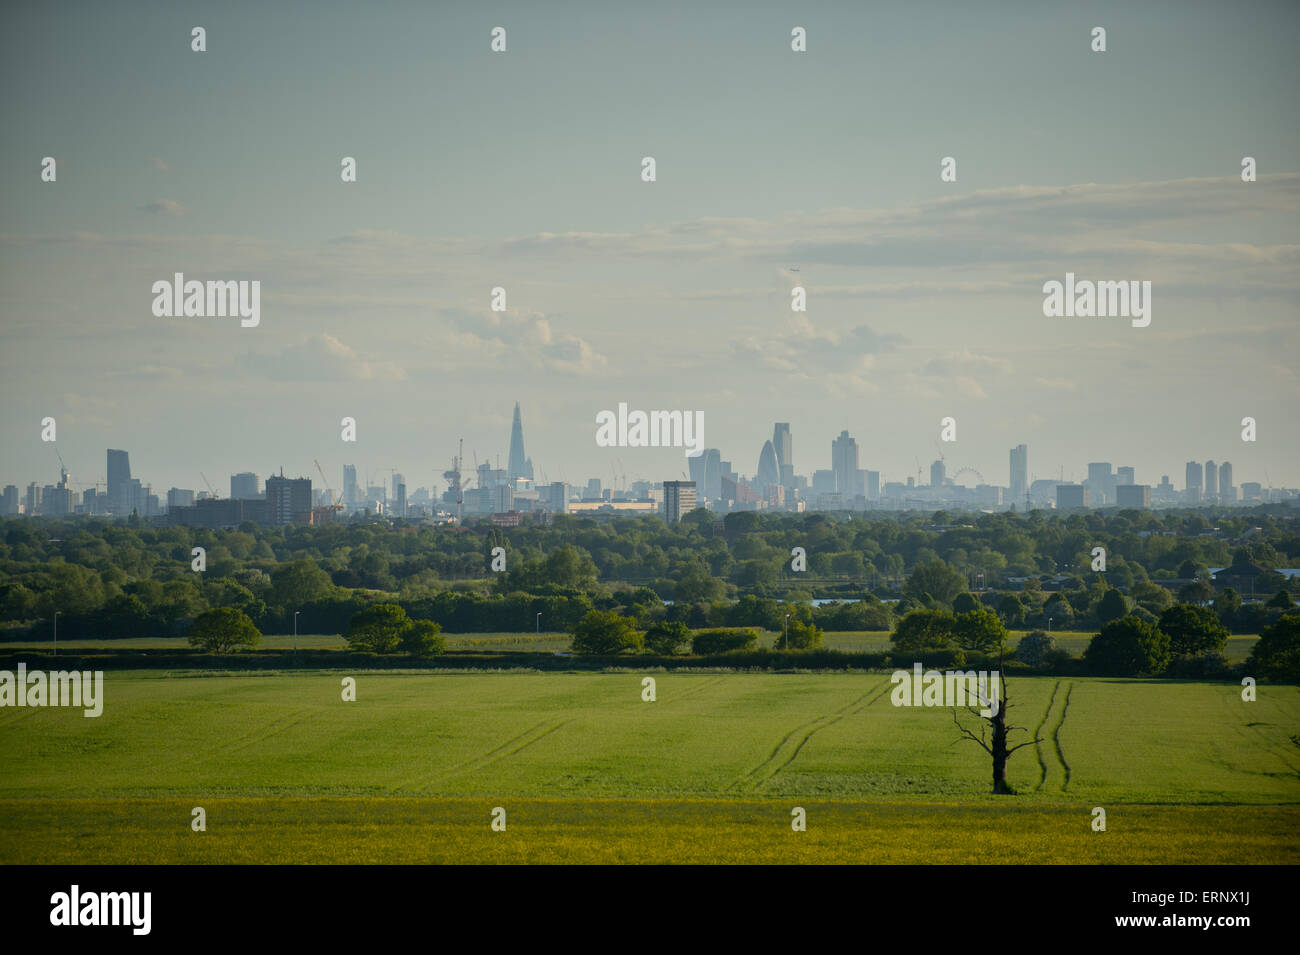 Die Skyline von London von Hainault, Essex zeigen die Scherbe, Tower 42, 30 St Mary Axe (die Gurke), 20 Fenchurch Street. Stockfoto